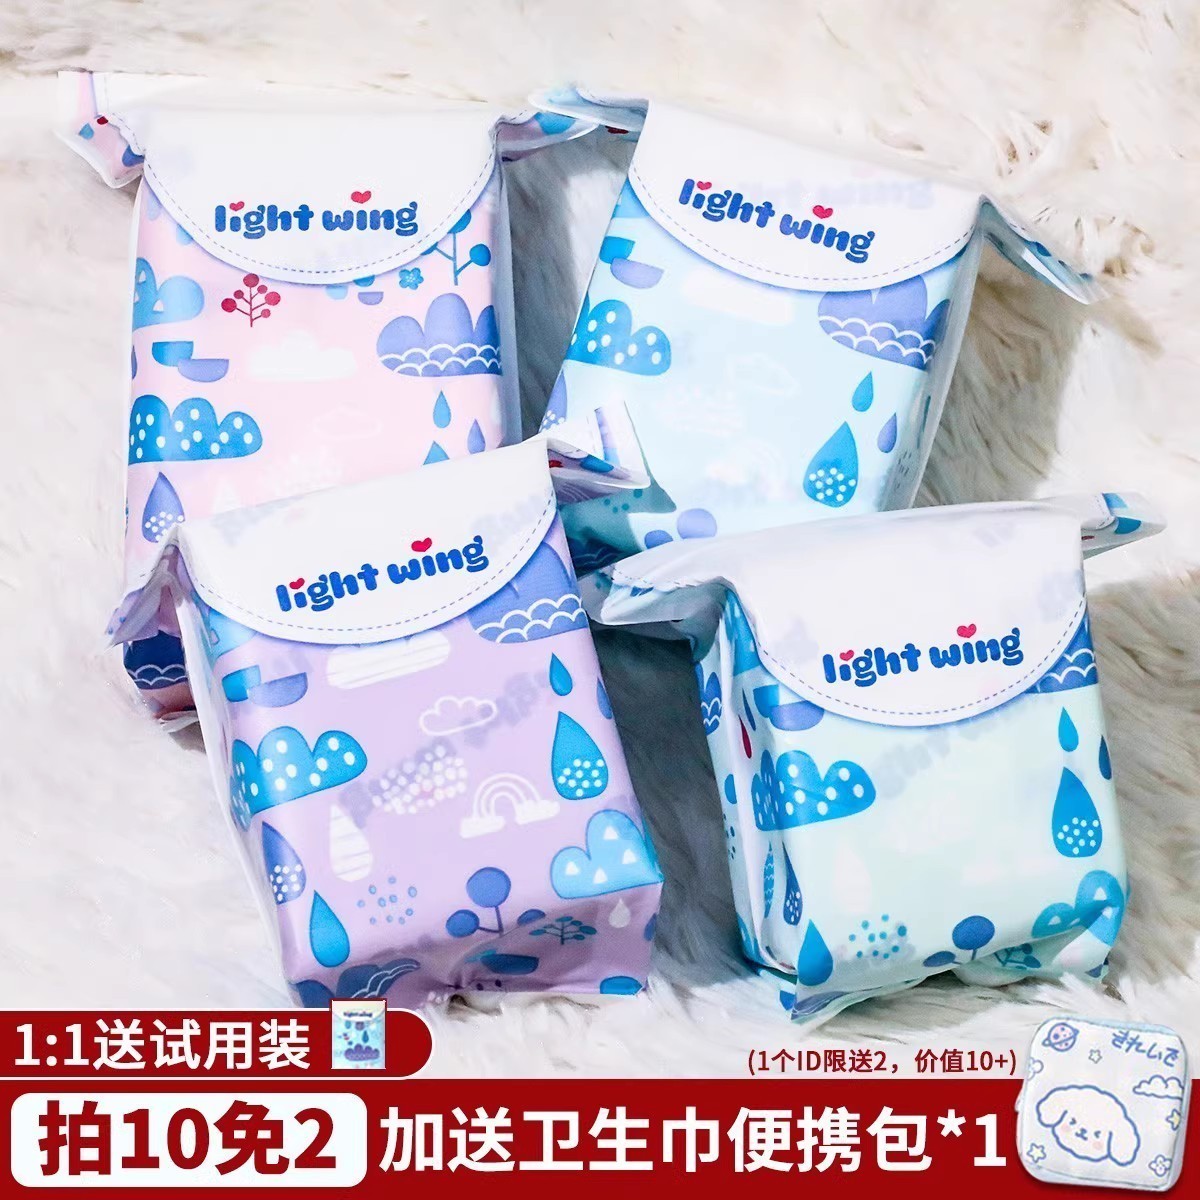 韩国lightwing卫生巾组合装月经期护垫日用夜用防侧漏姨妈安心裤